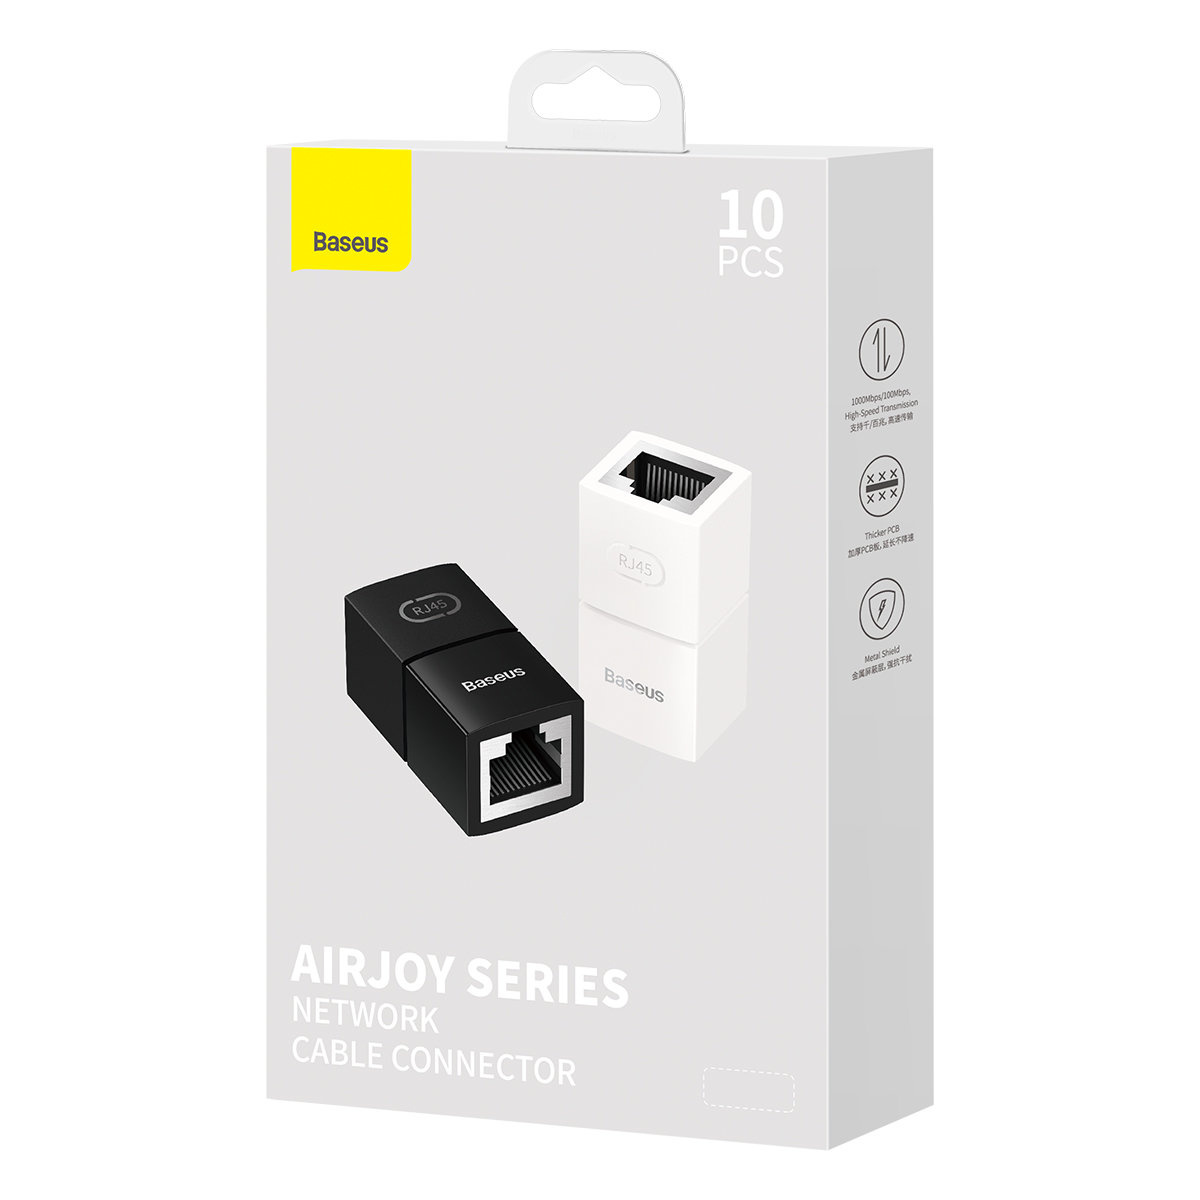 Baseus AirJoy Series Ethernet RJ-45 Cable Connector black [10 PACK]